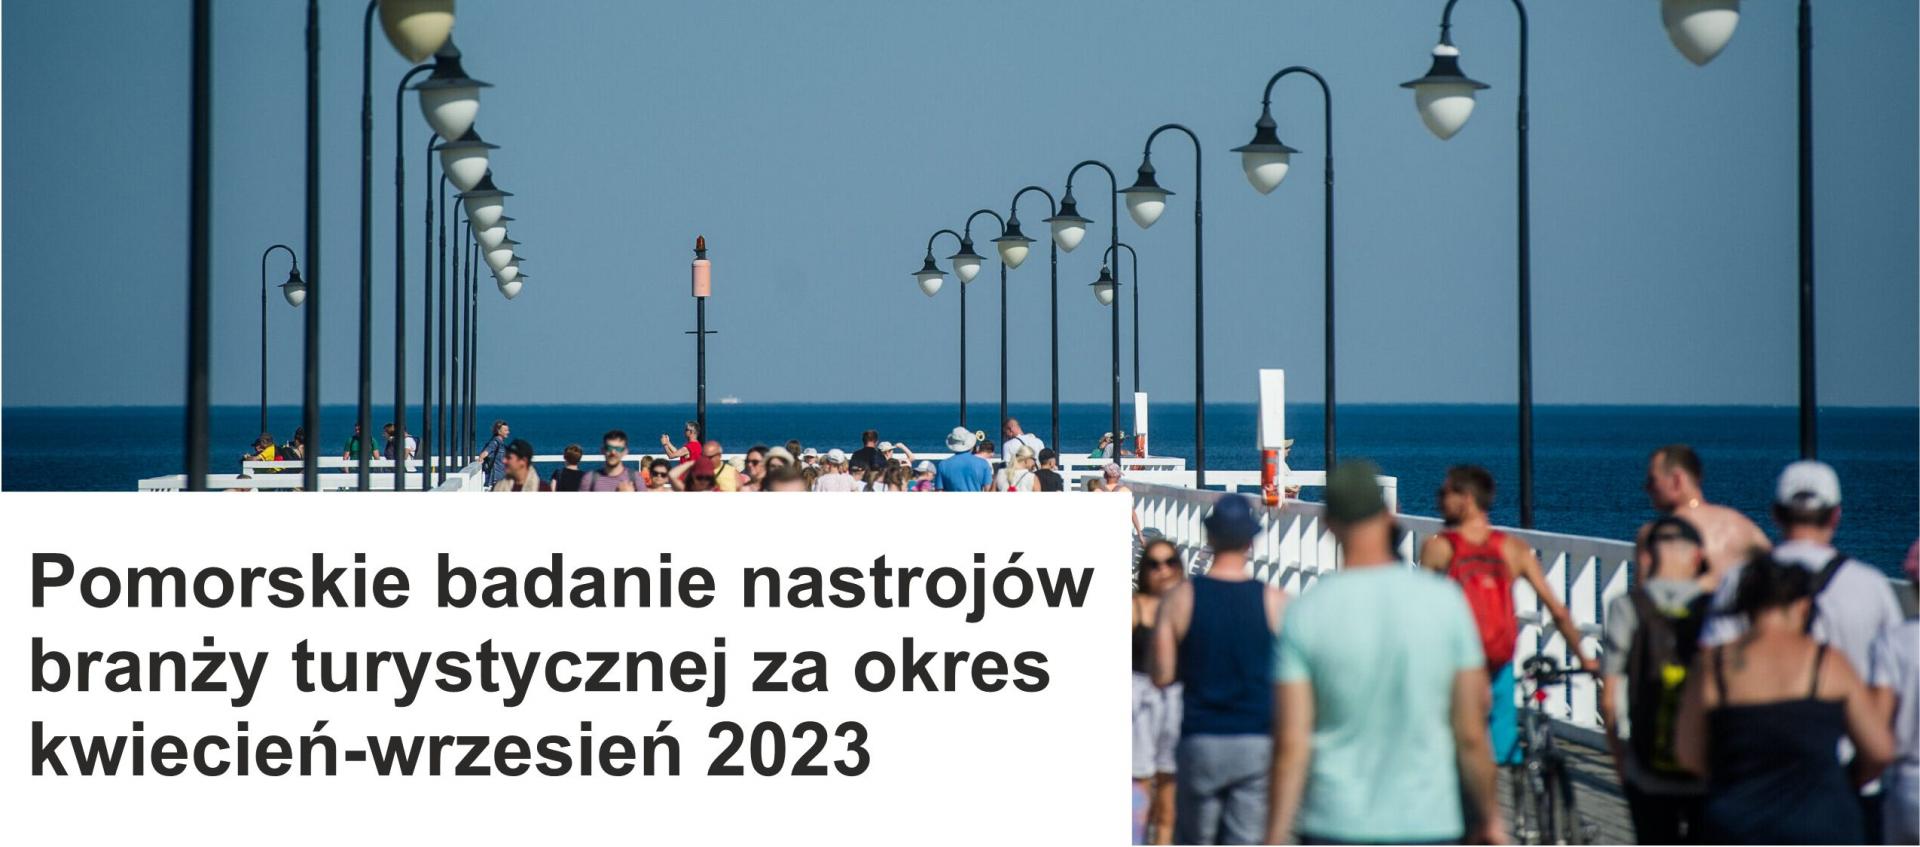 Pomorskie badanie nastrojów branży turystycznej za okres kwiecień-wrzesień 2023